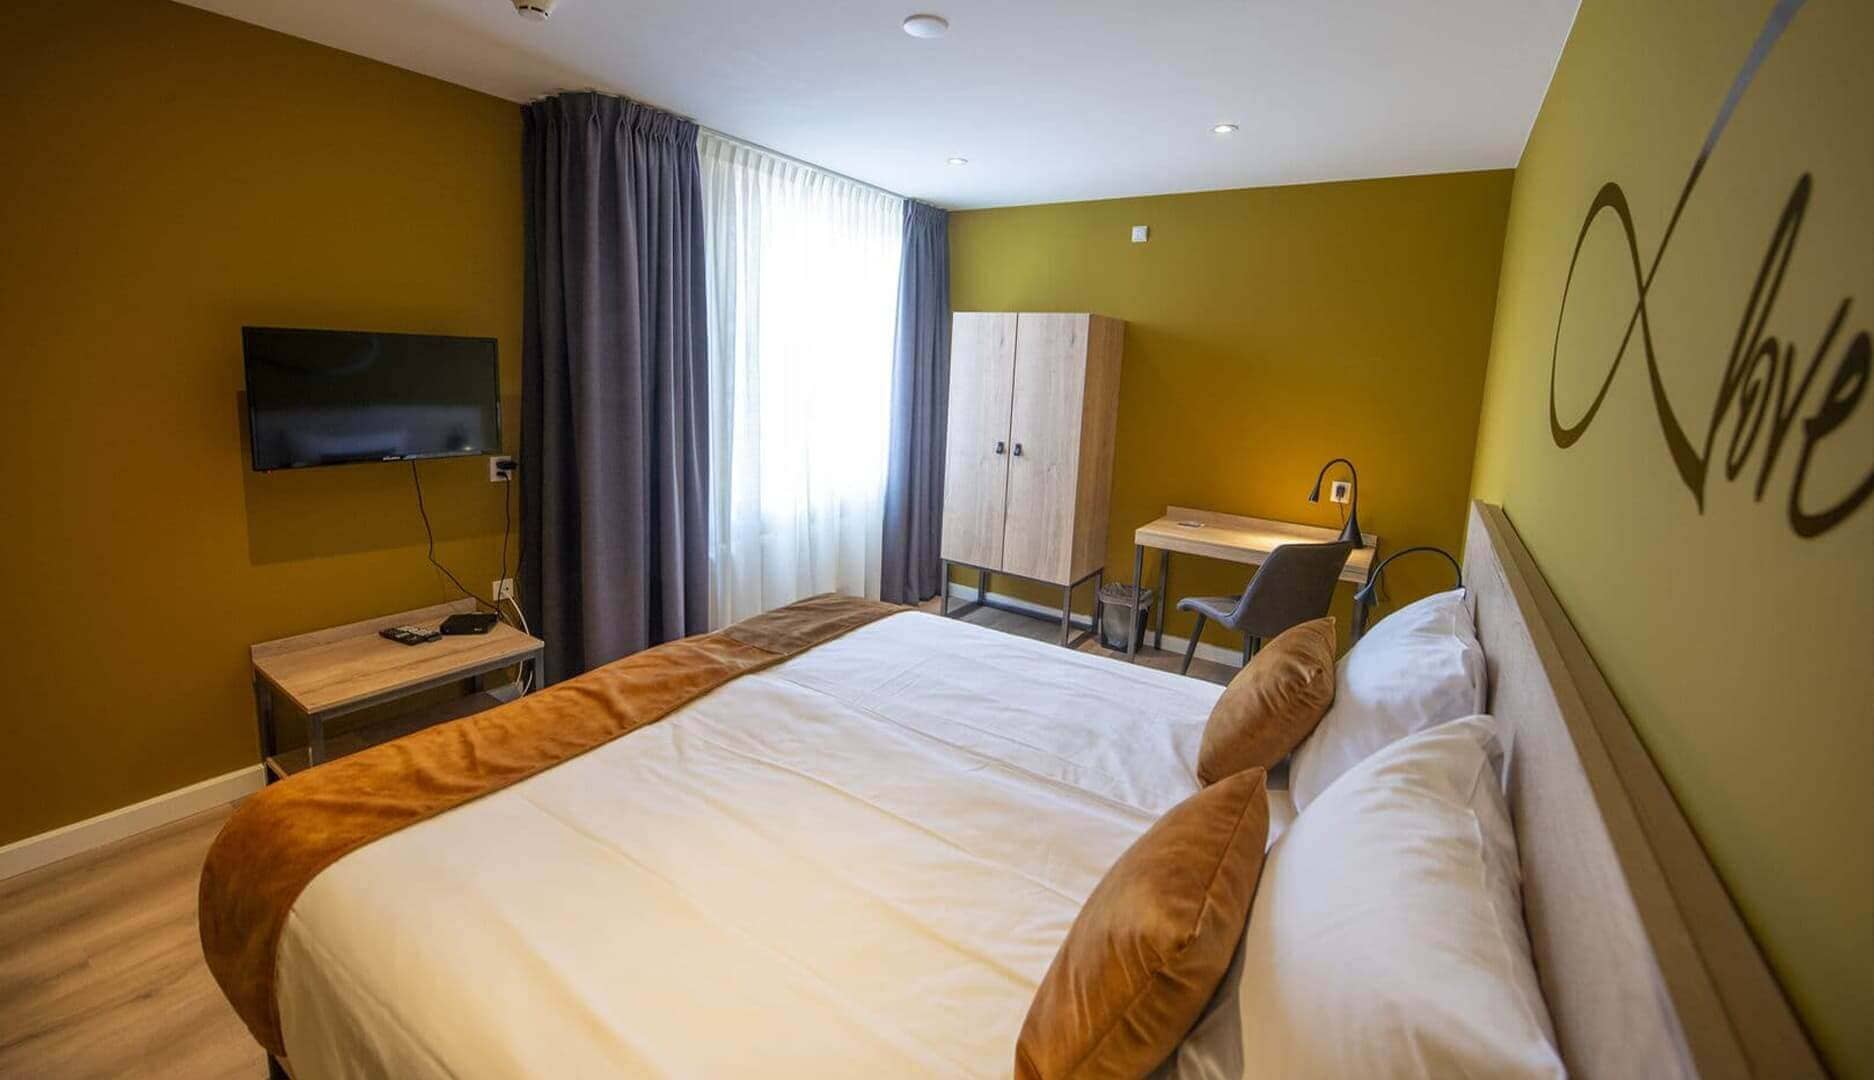 Overzichtsfoto Comfort tweepersoonskamer double bij het hotel in drenthe